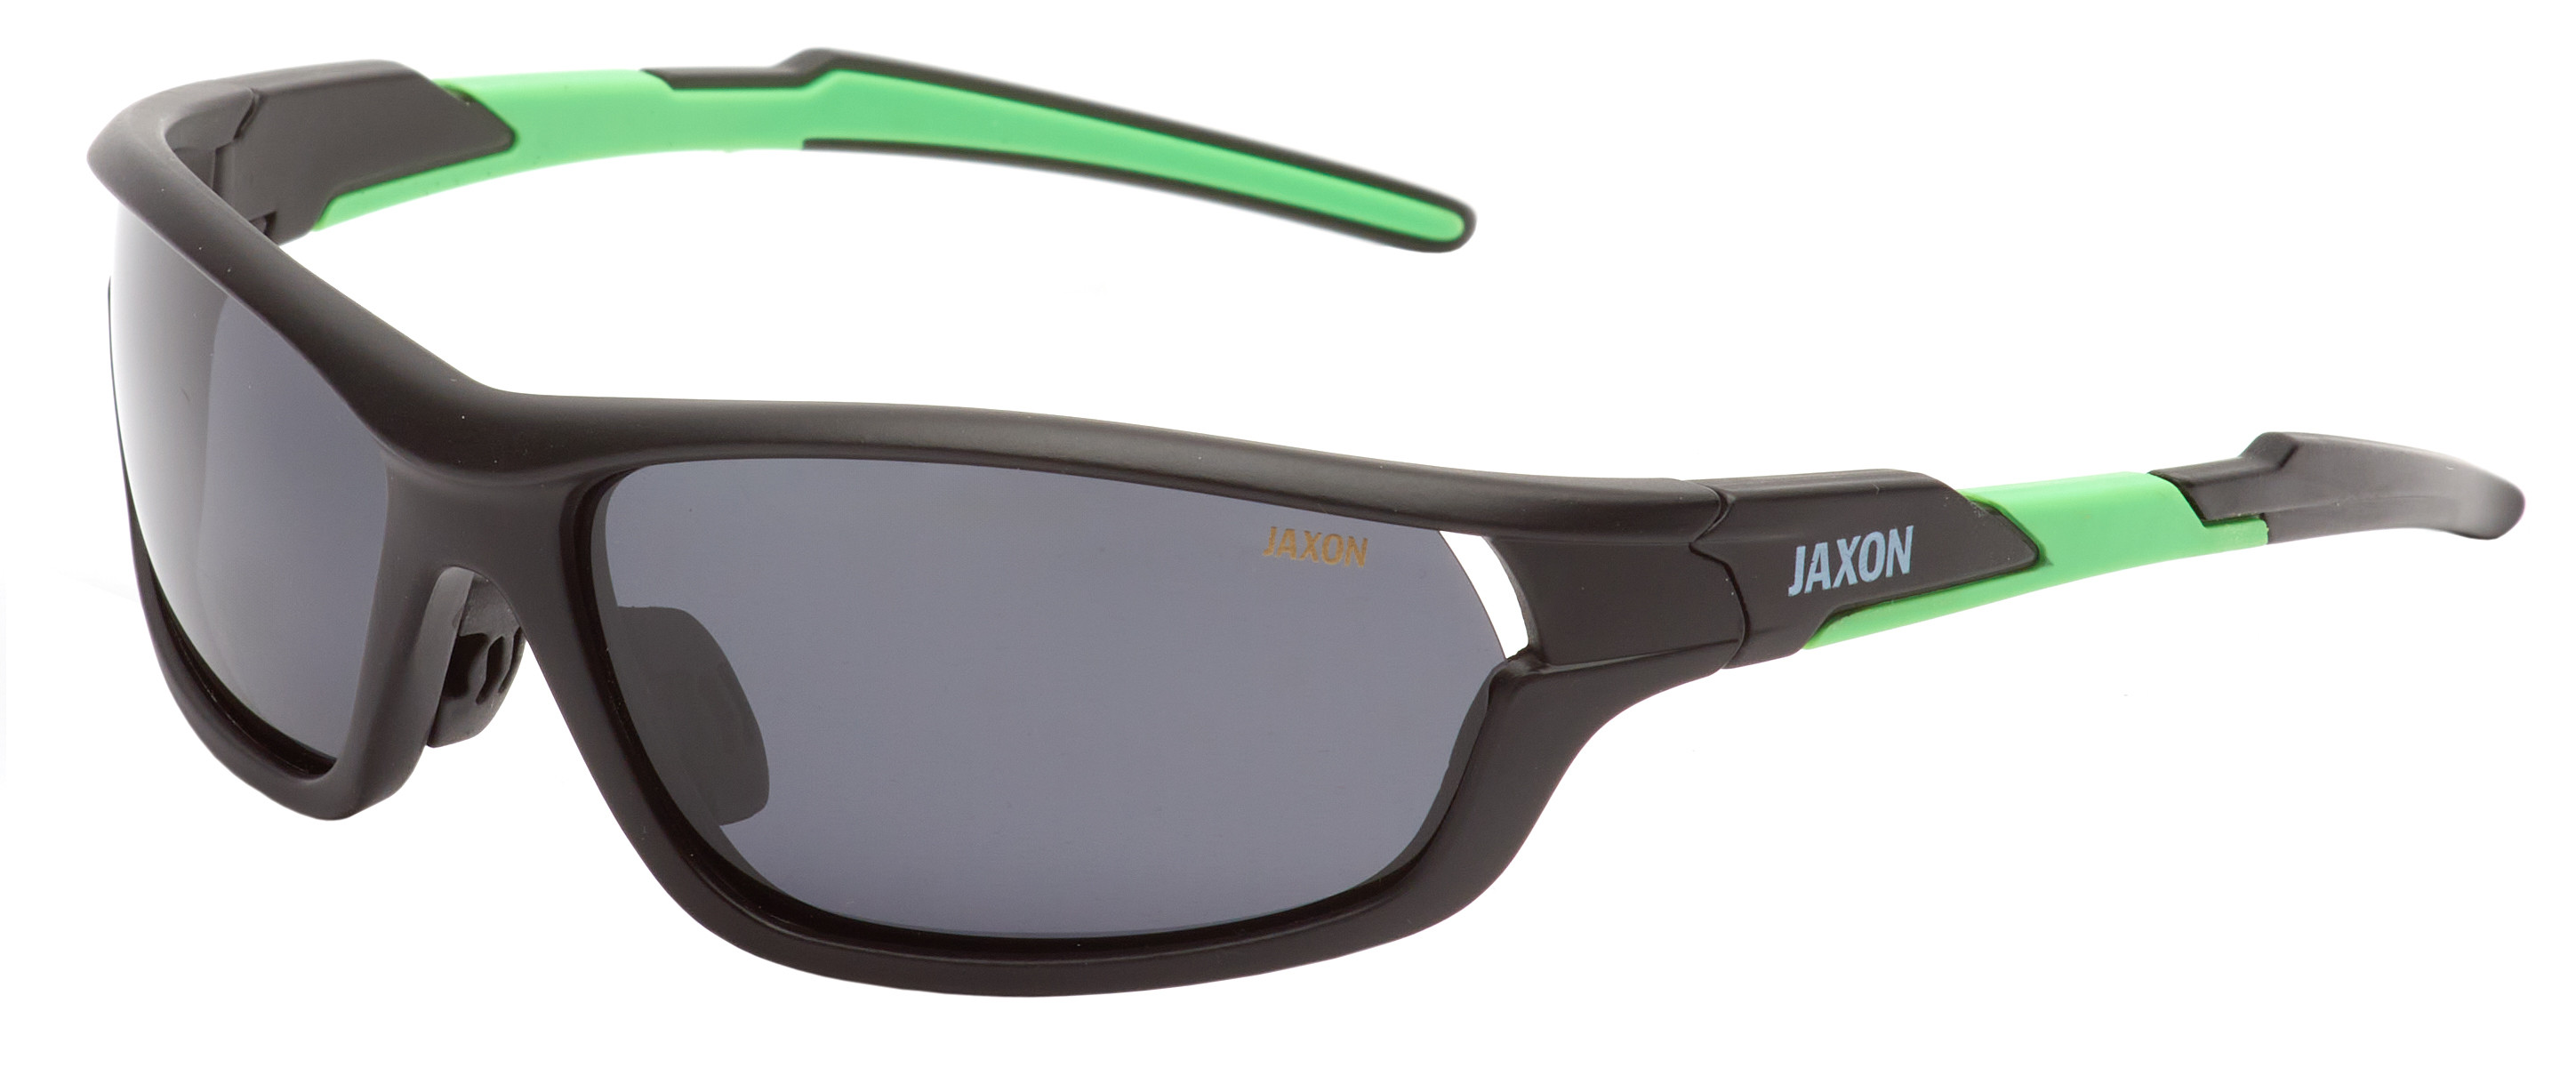 Очки поляризационные Jaxon X60SM серые